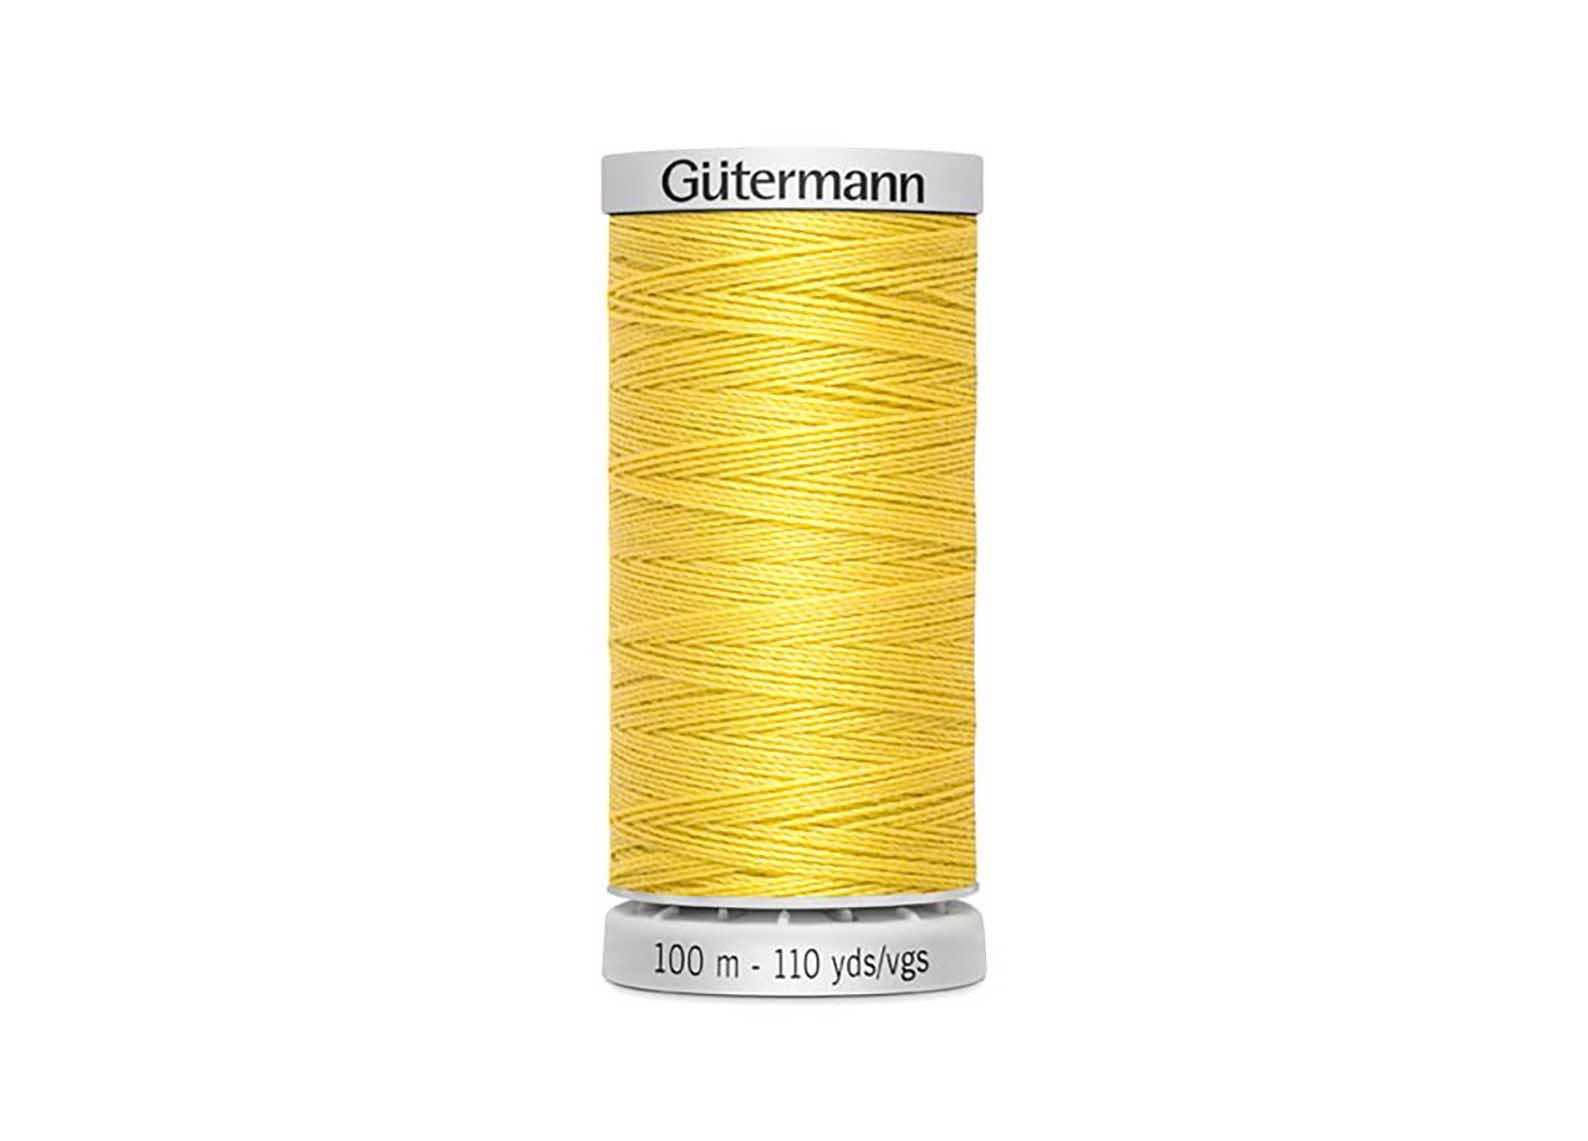 Gutermann Denim Sewing Thread, Gold, One Size